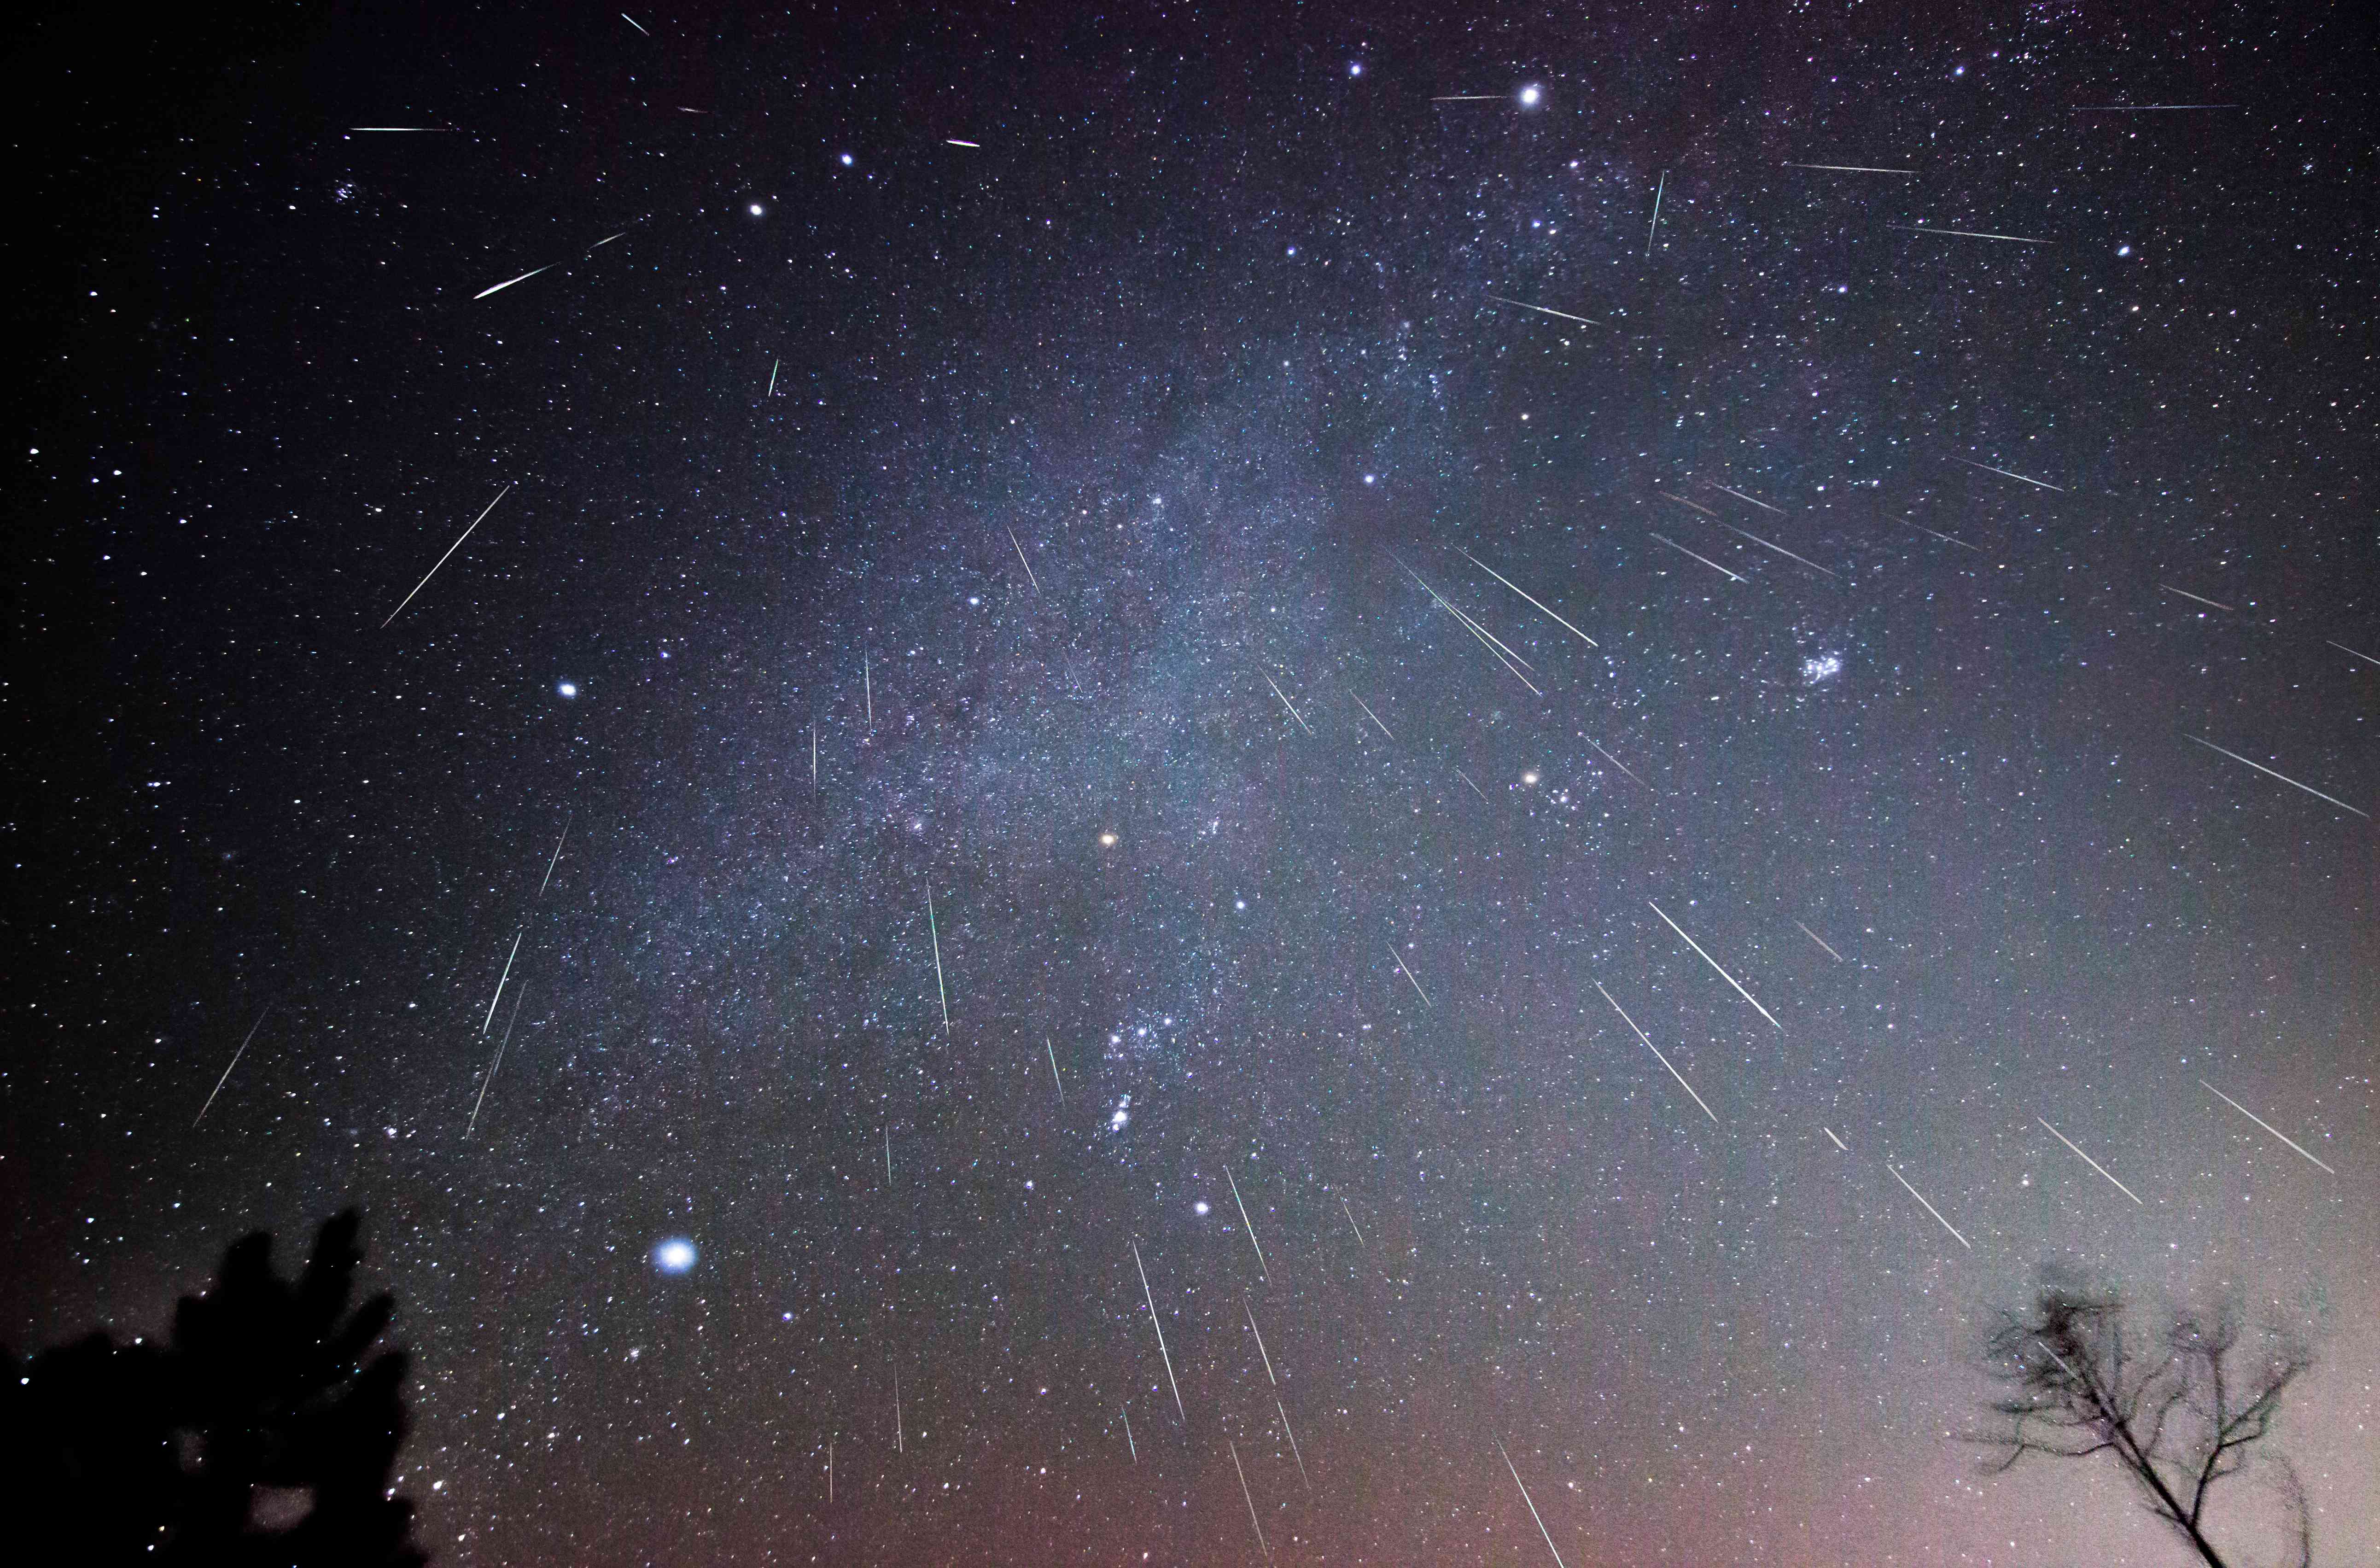 12月的一个夜晚，在弗吉尼亚州的一个偏远地区拍摄了几个小时的合成照片，照片中双子座流星雨向下倾泻。